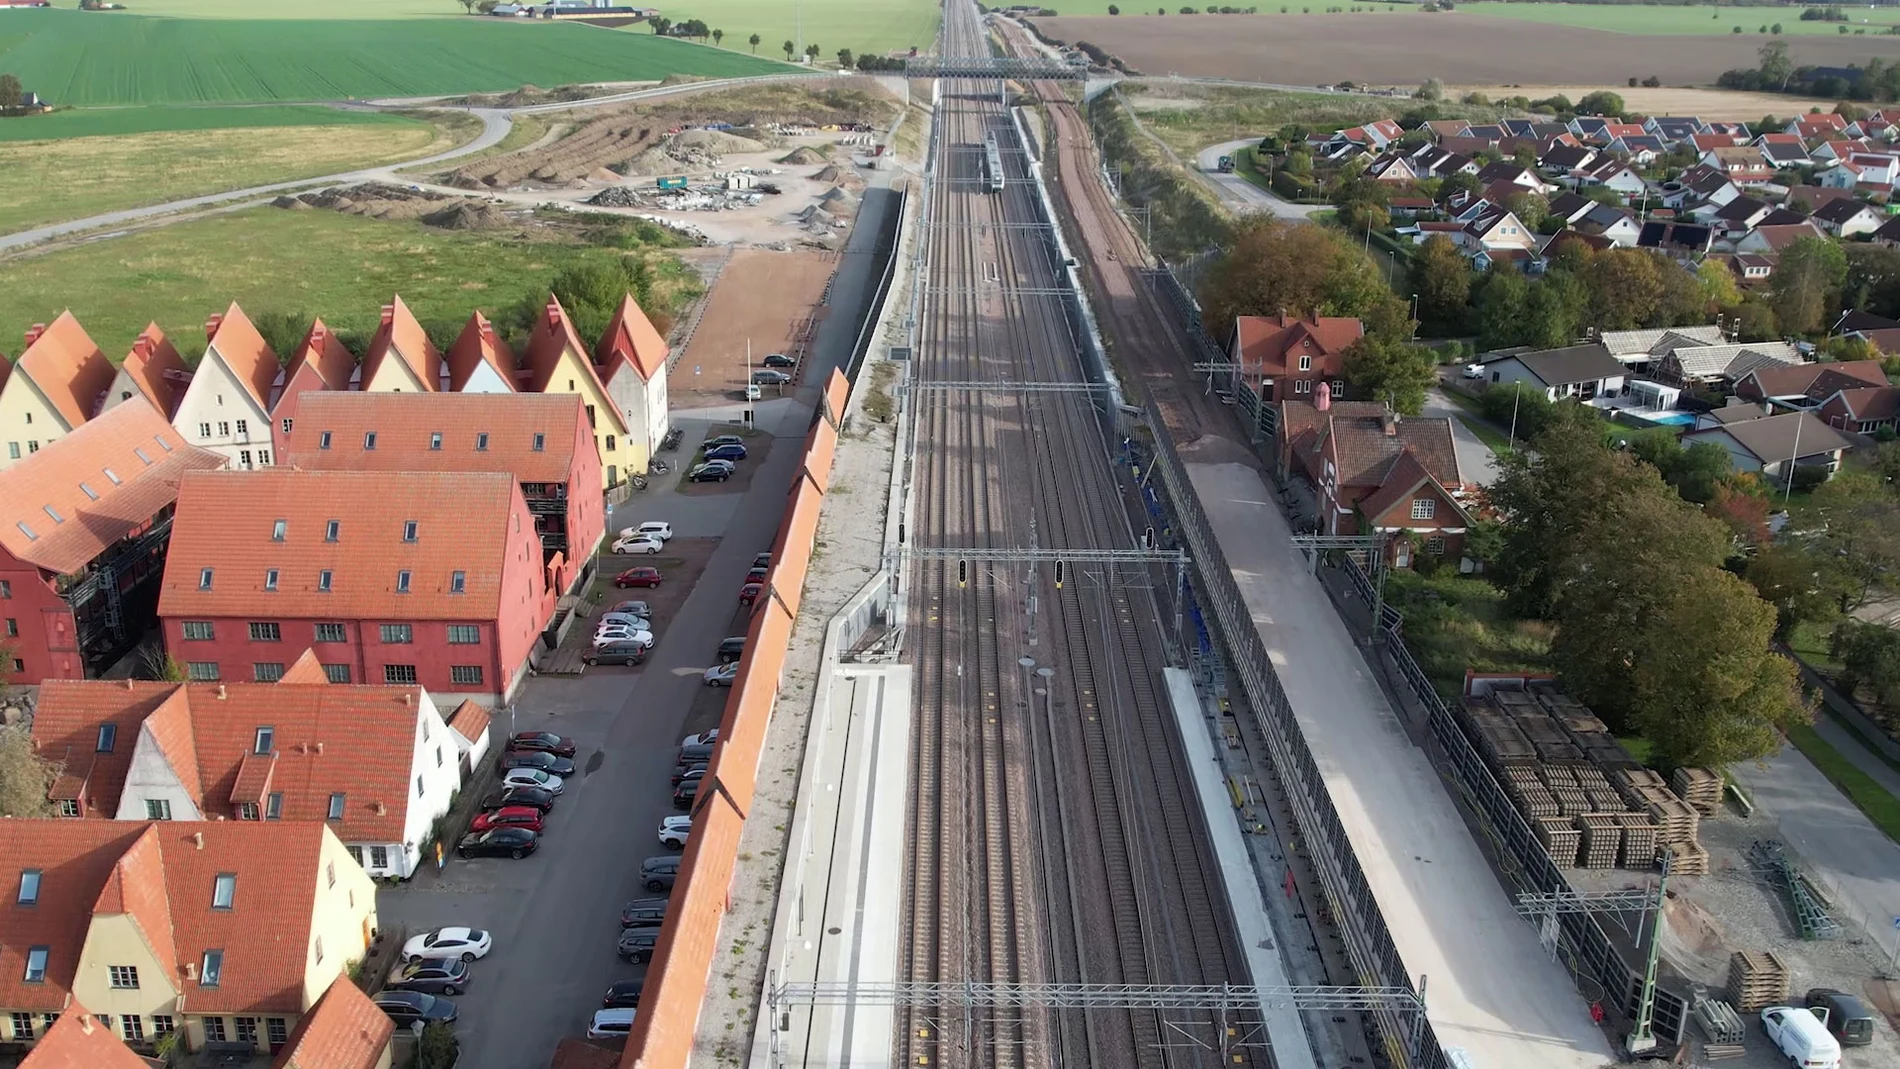 Lund-Arlöv forma parte de uno de los corredores ferroviarios más importantes de Europa